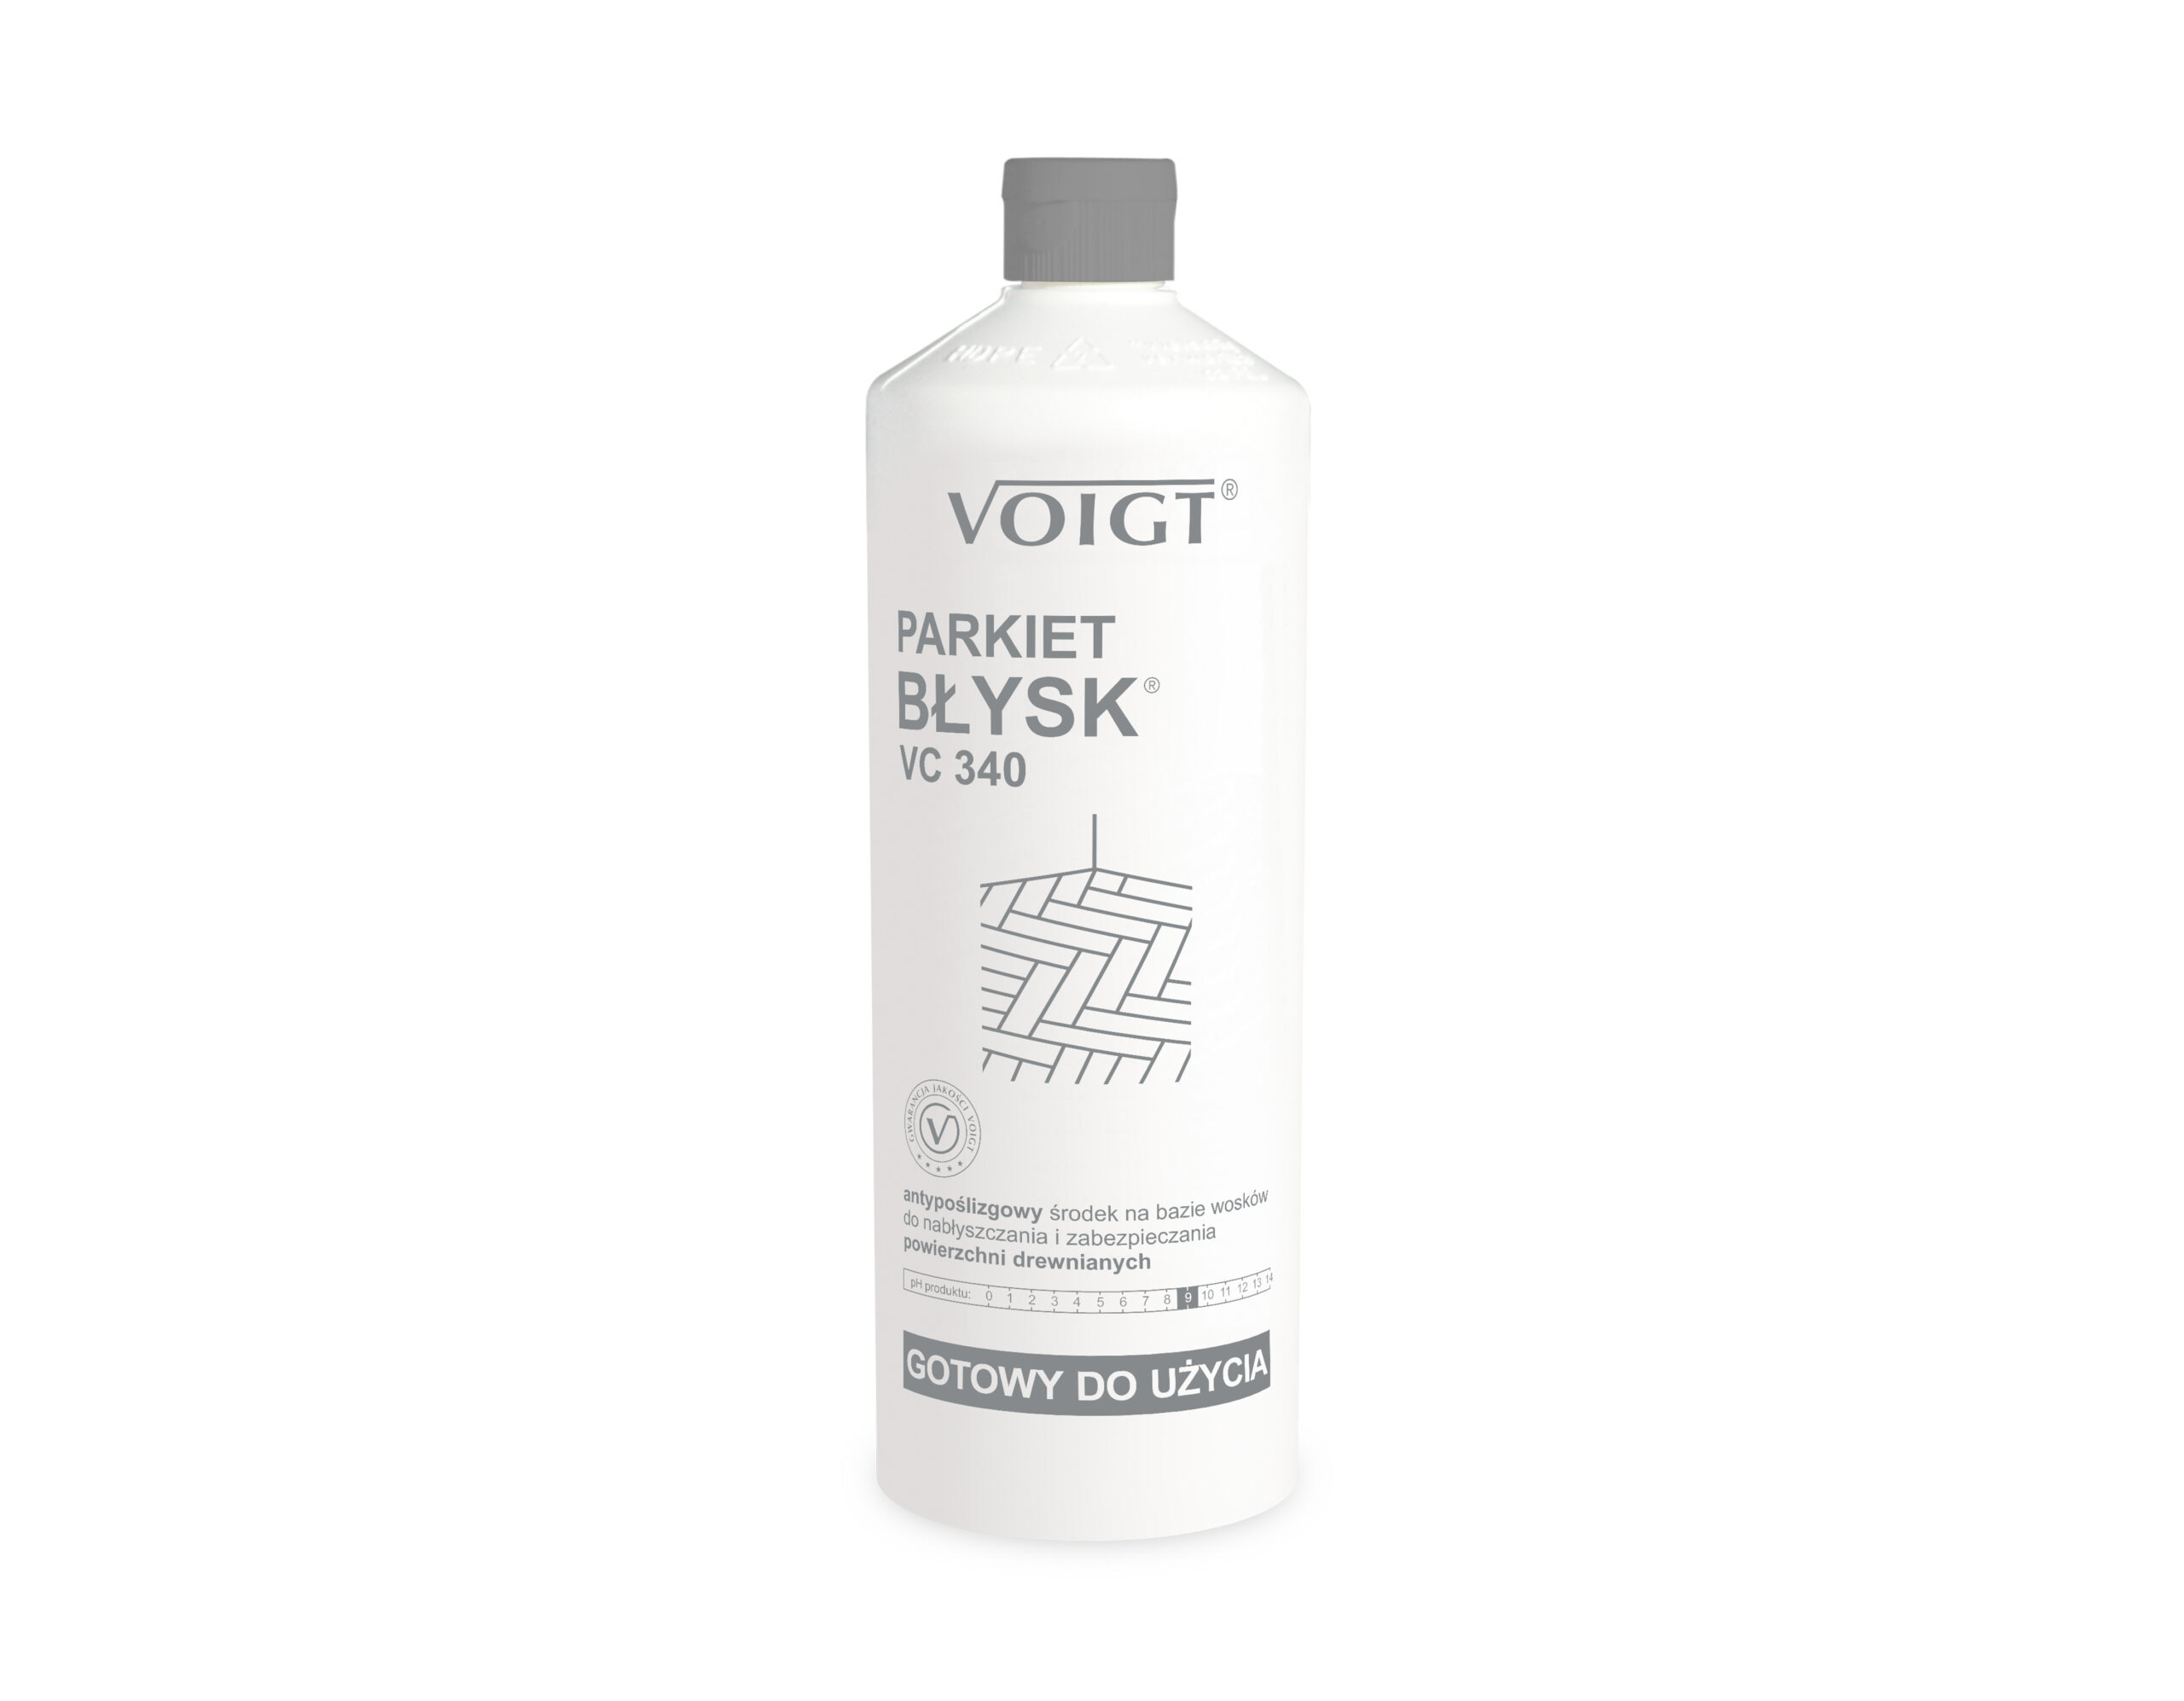 voigt-vc340-antyposlizgowy-srodek-do-nablyszczania-powierzchni-drewnianych